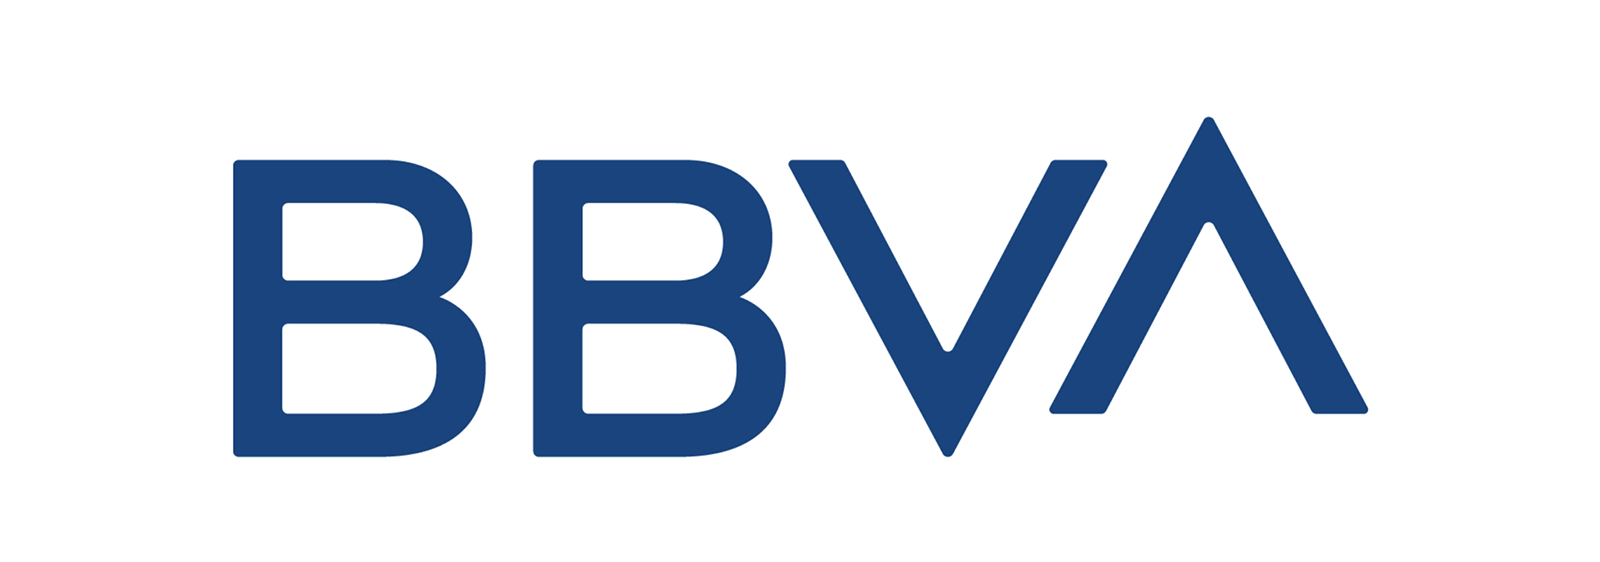 世界上最大的金融机构之一的BBVA启动全新的品牌VI形象-深圳VI设计1